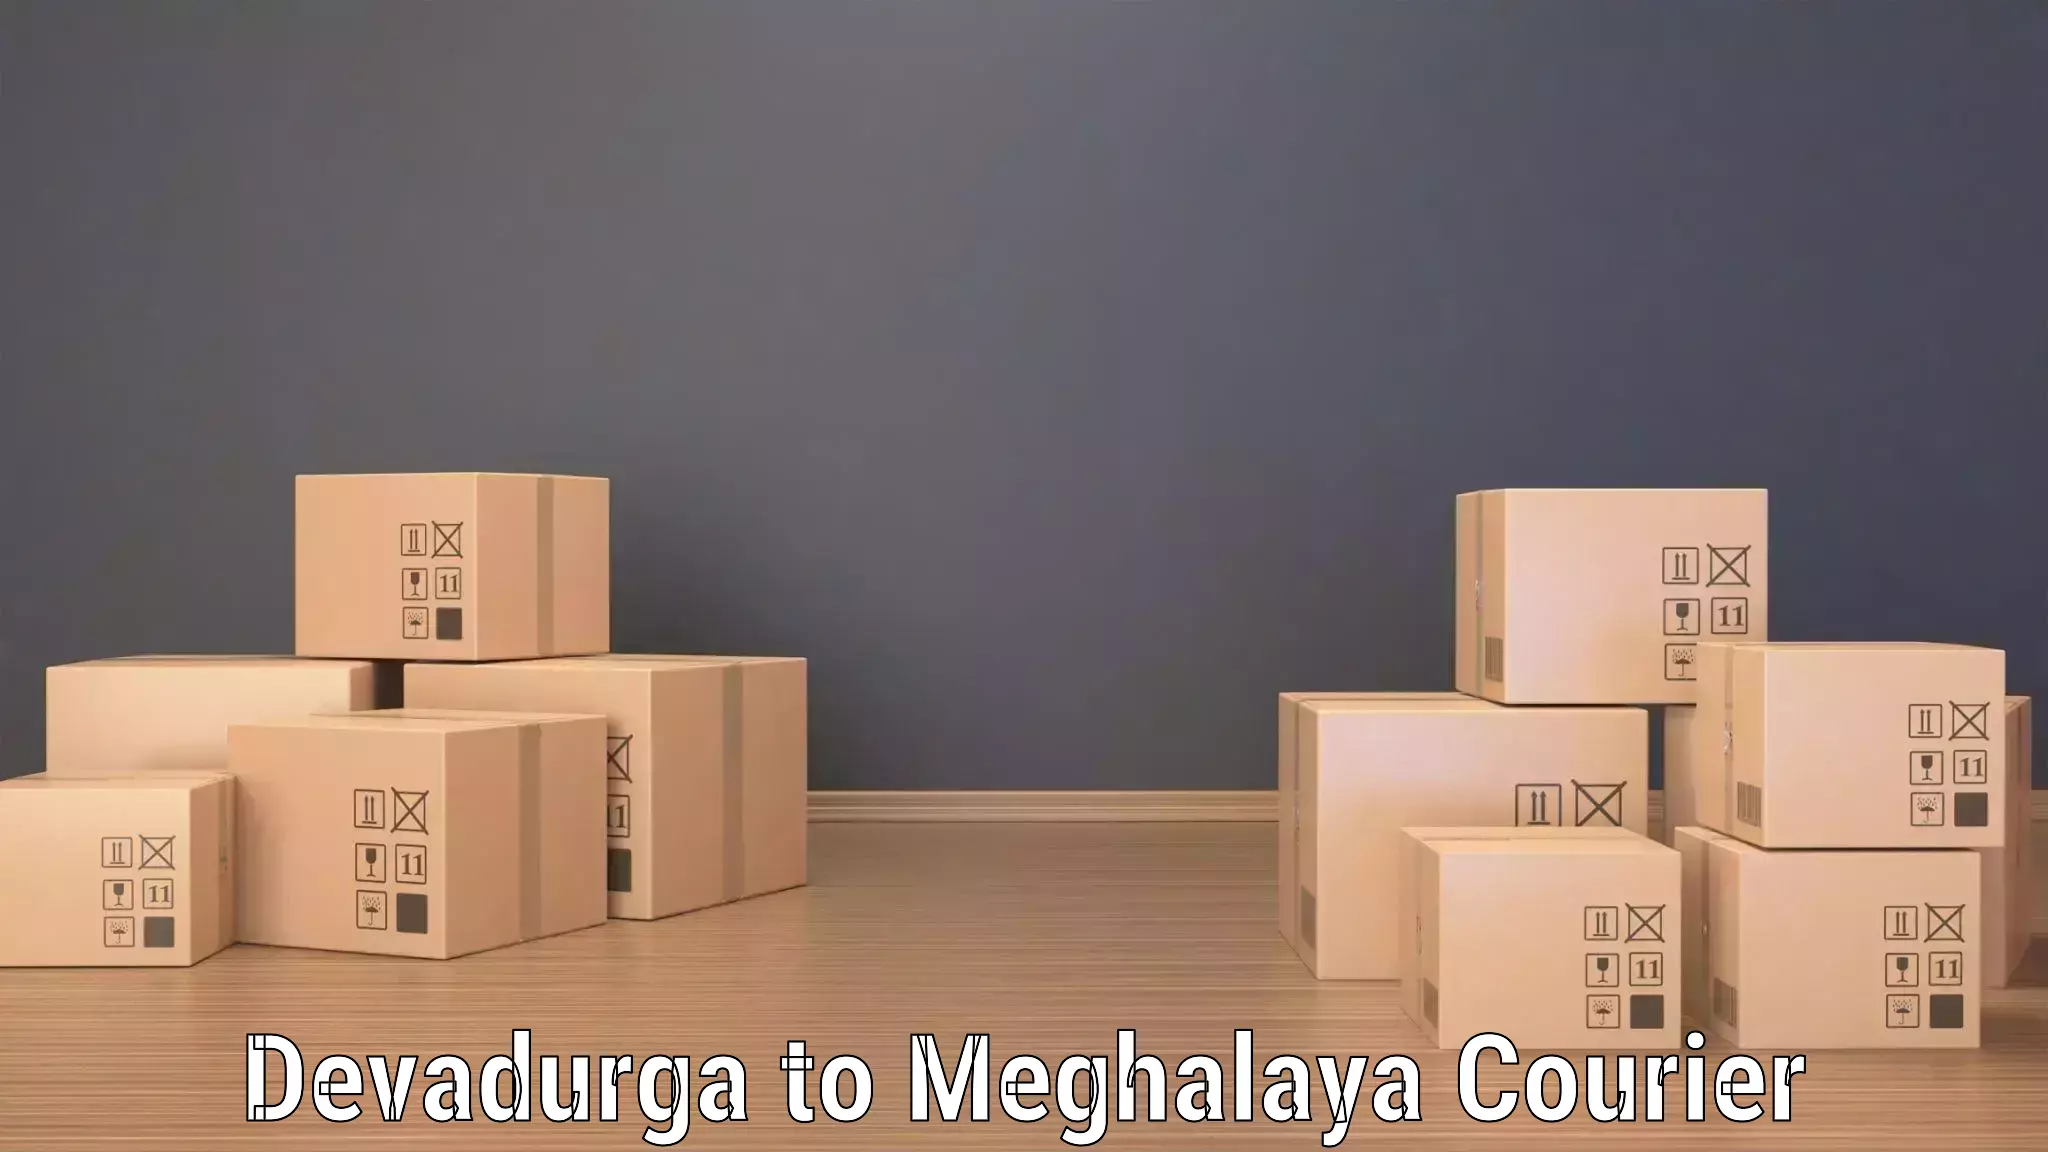 Dynamic courier services Devadurga to Shillong